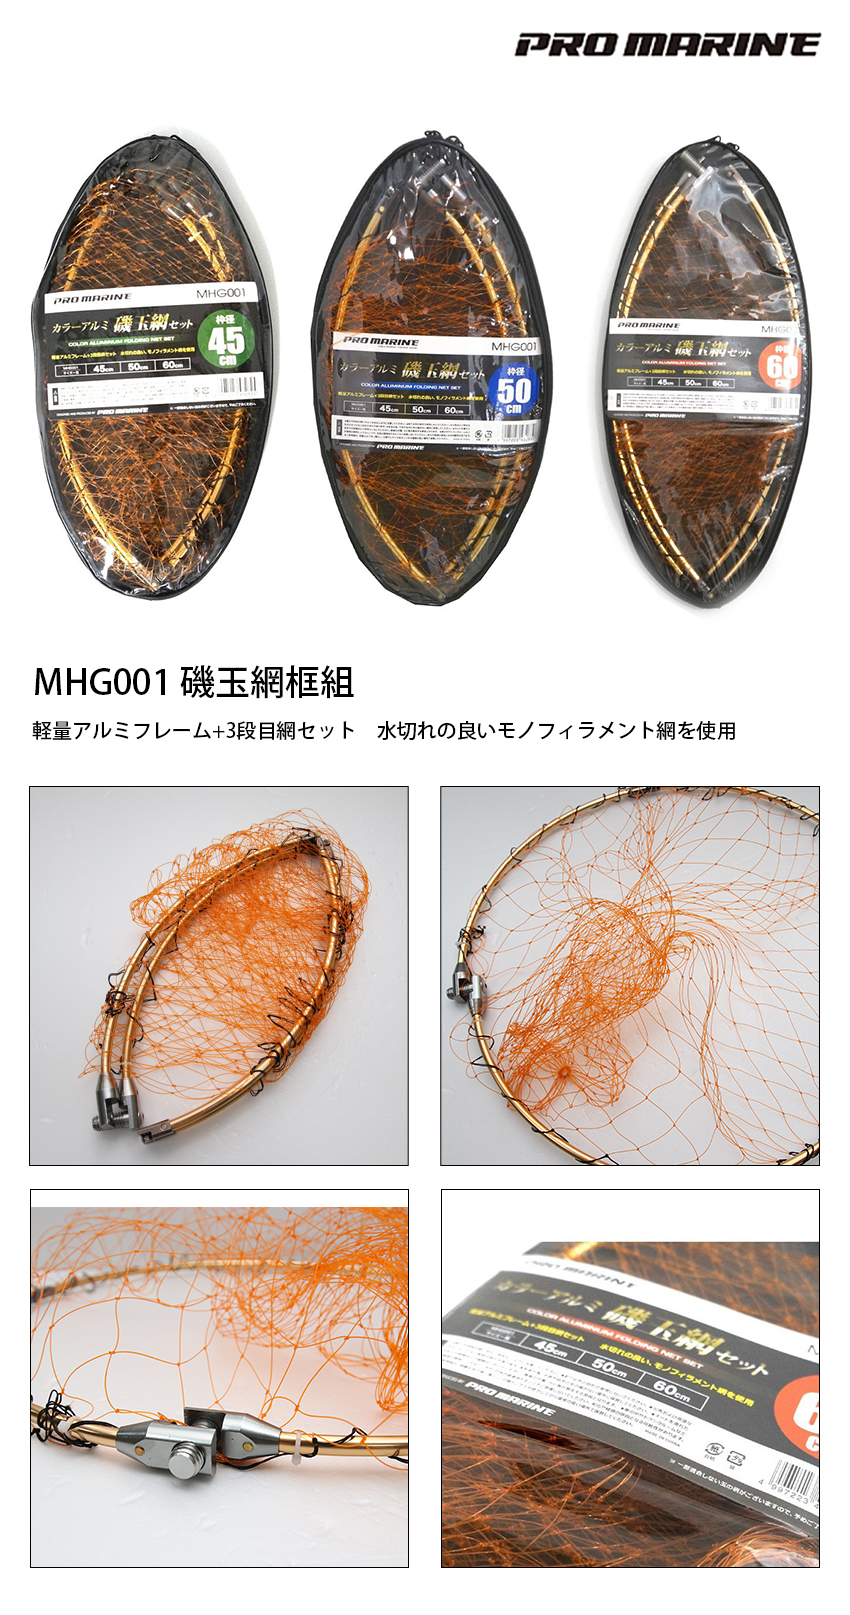 PRO MARINE MHG001 60cm [磯玉網框組] - 漁拓釣具官方線上購物平台